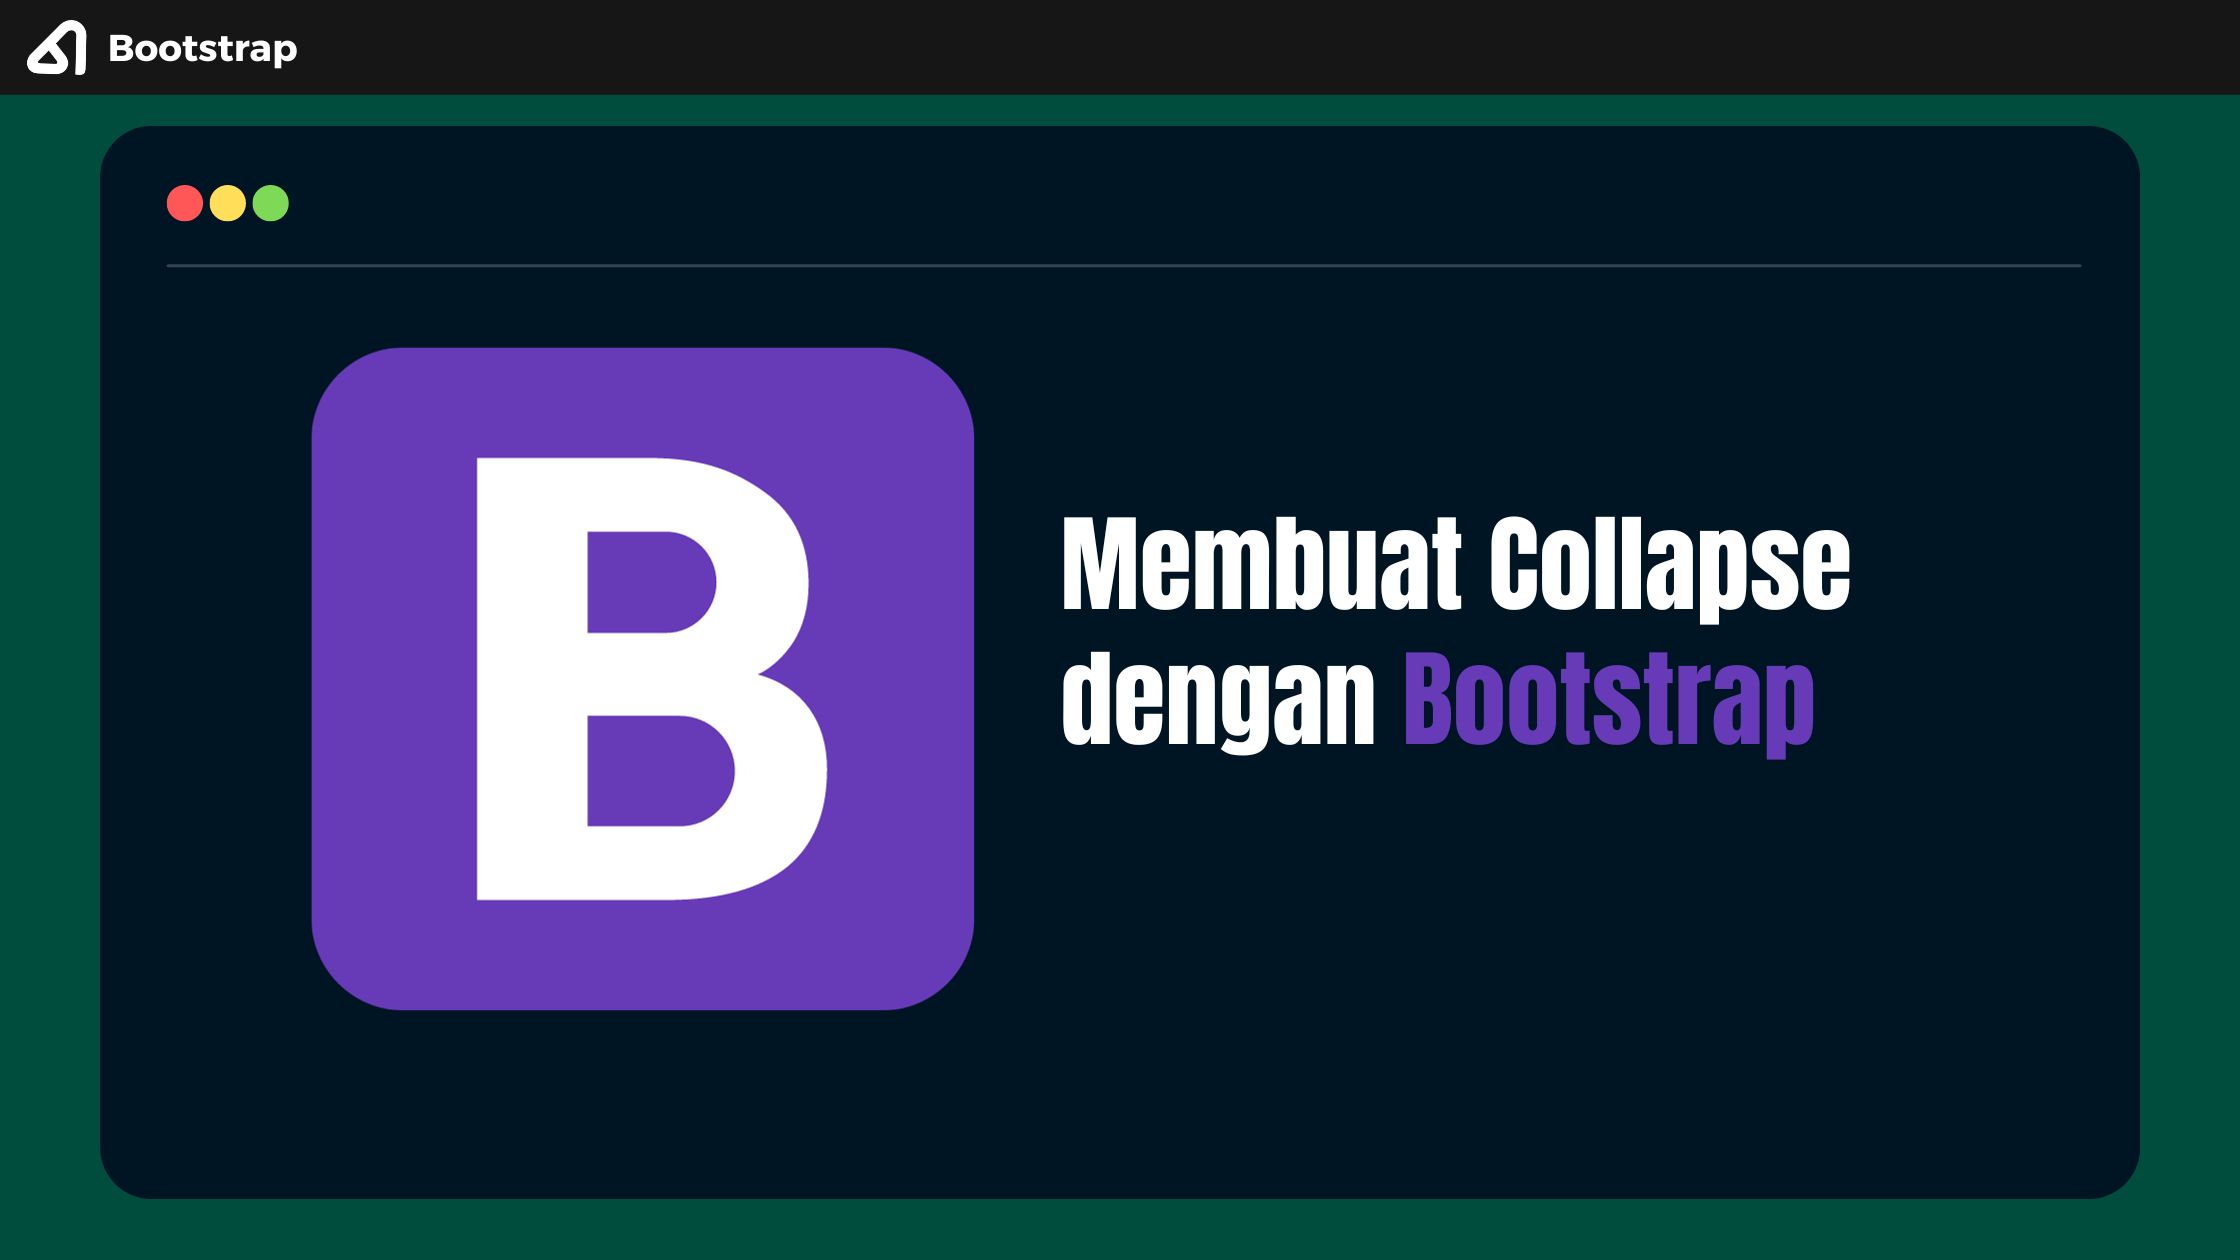 Membuat Collapse dengan Bootstrap